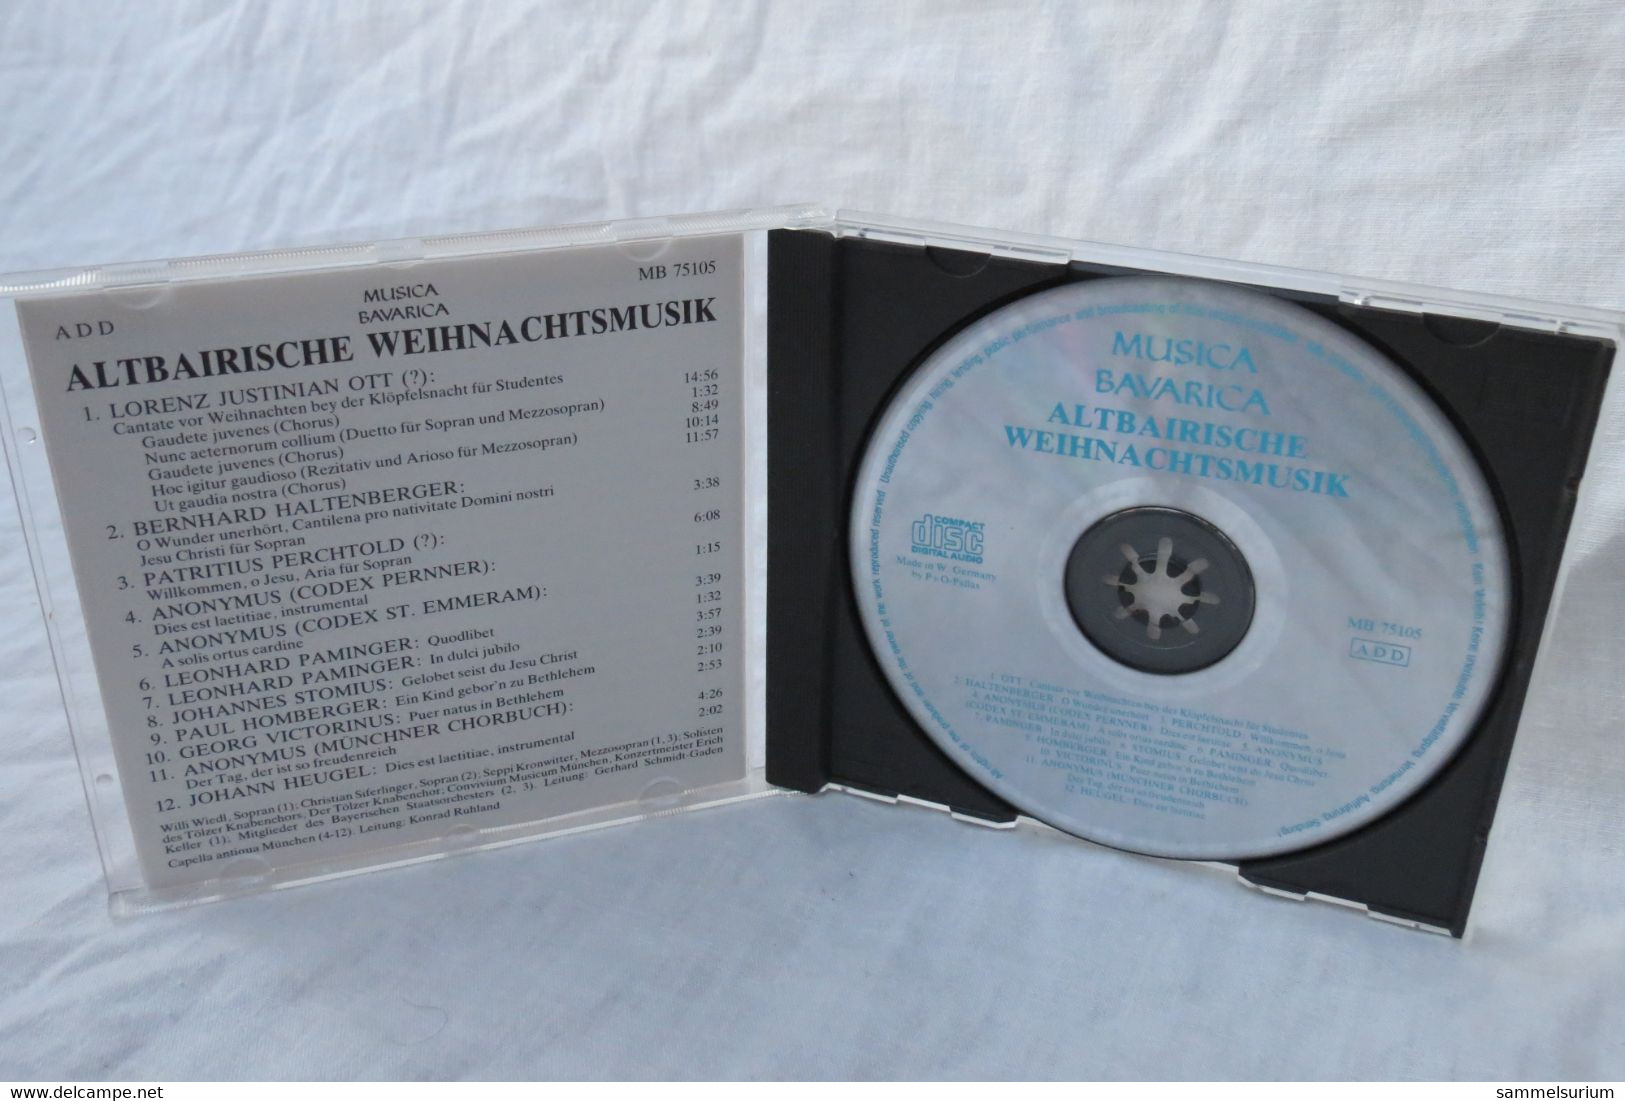 CD "Tölzer Knabenchor" Altbairische Weihnachtsmusik - Weihnachtslieder